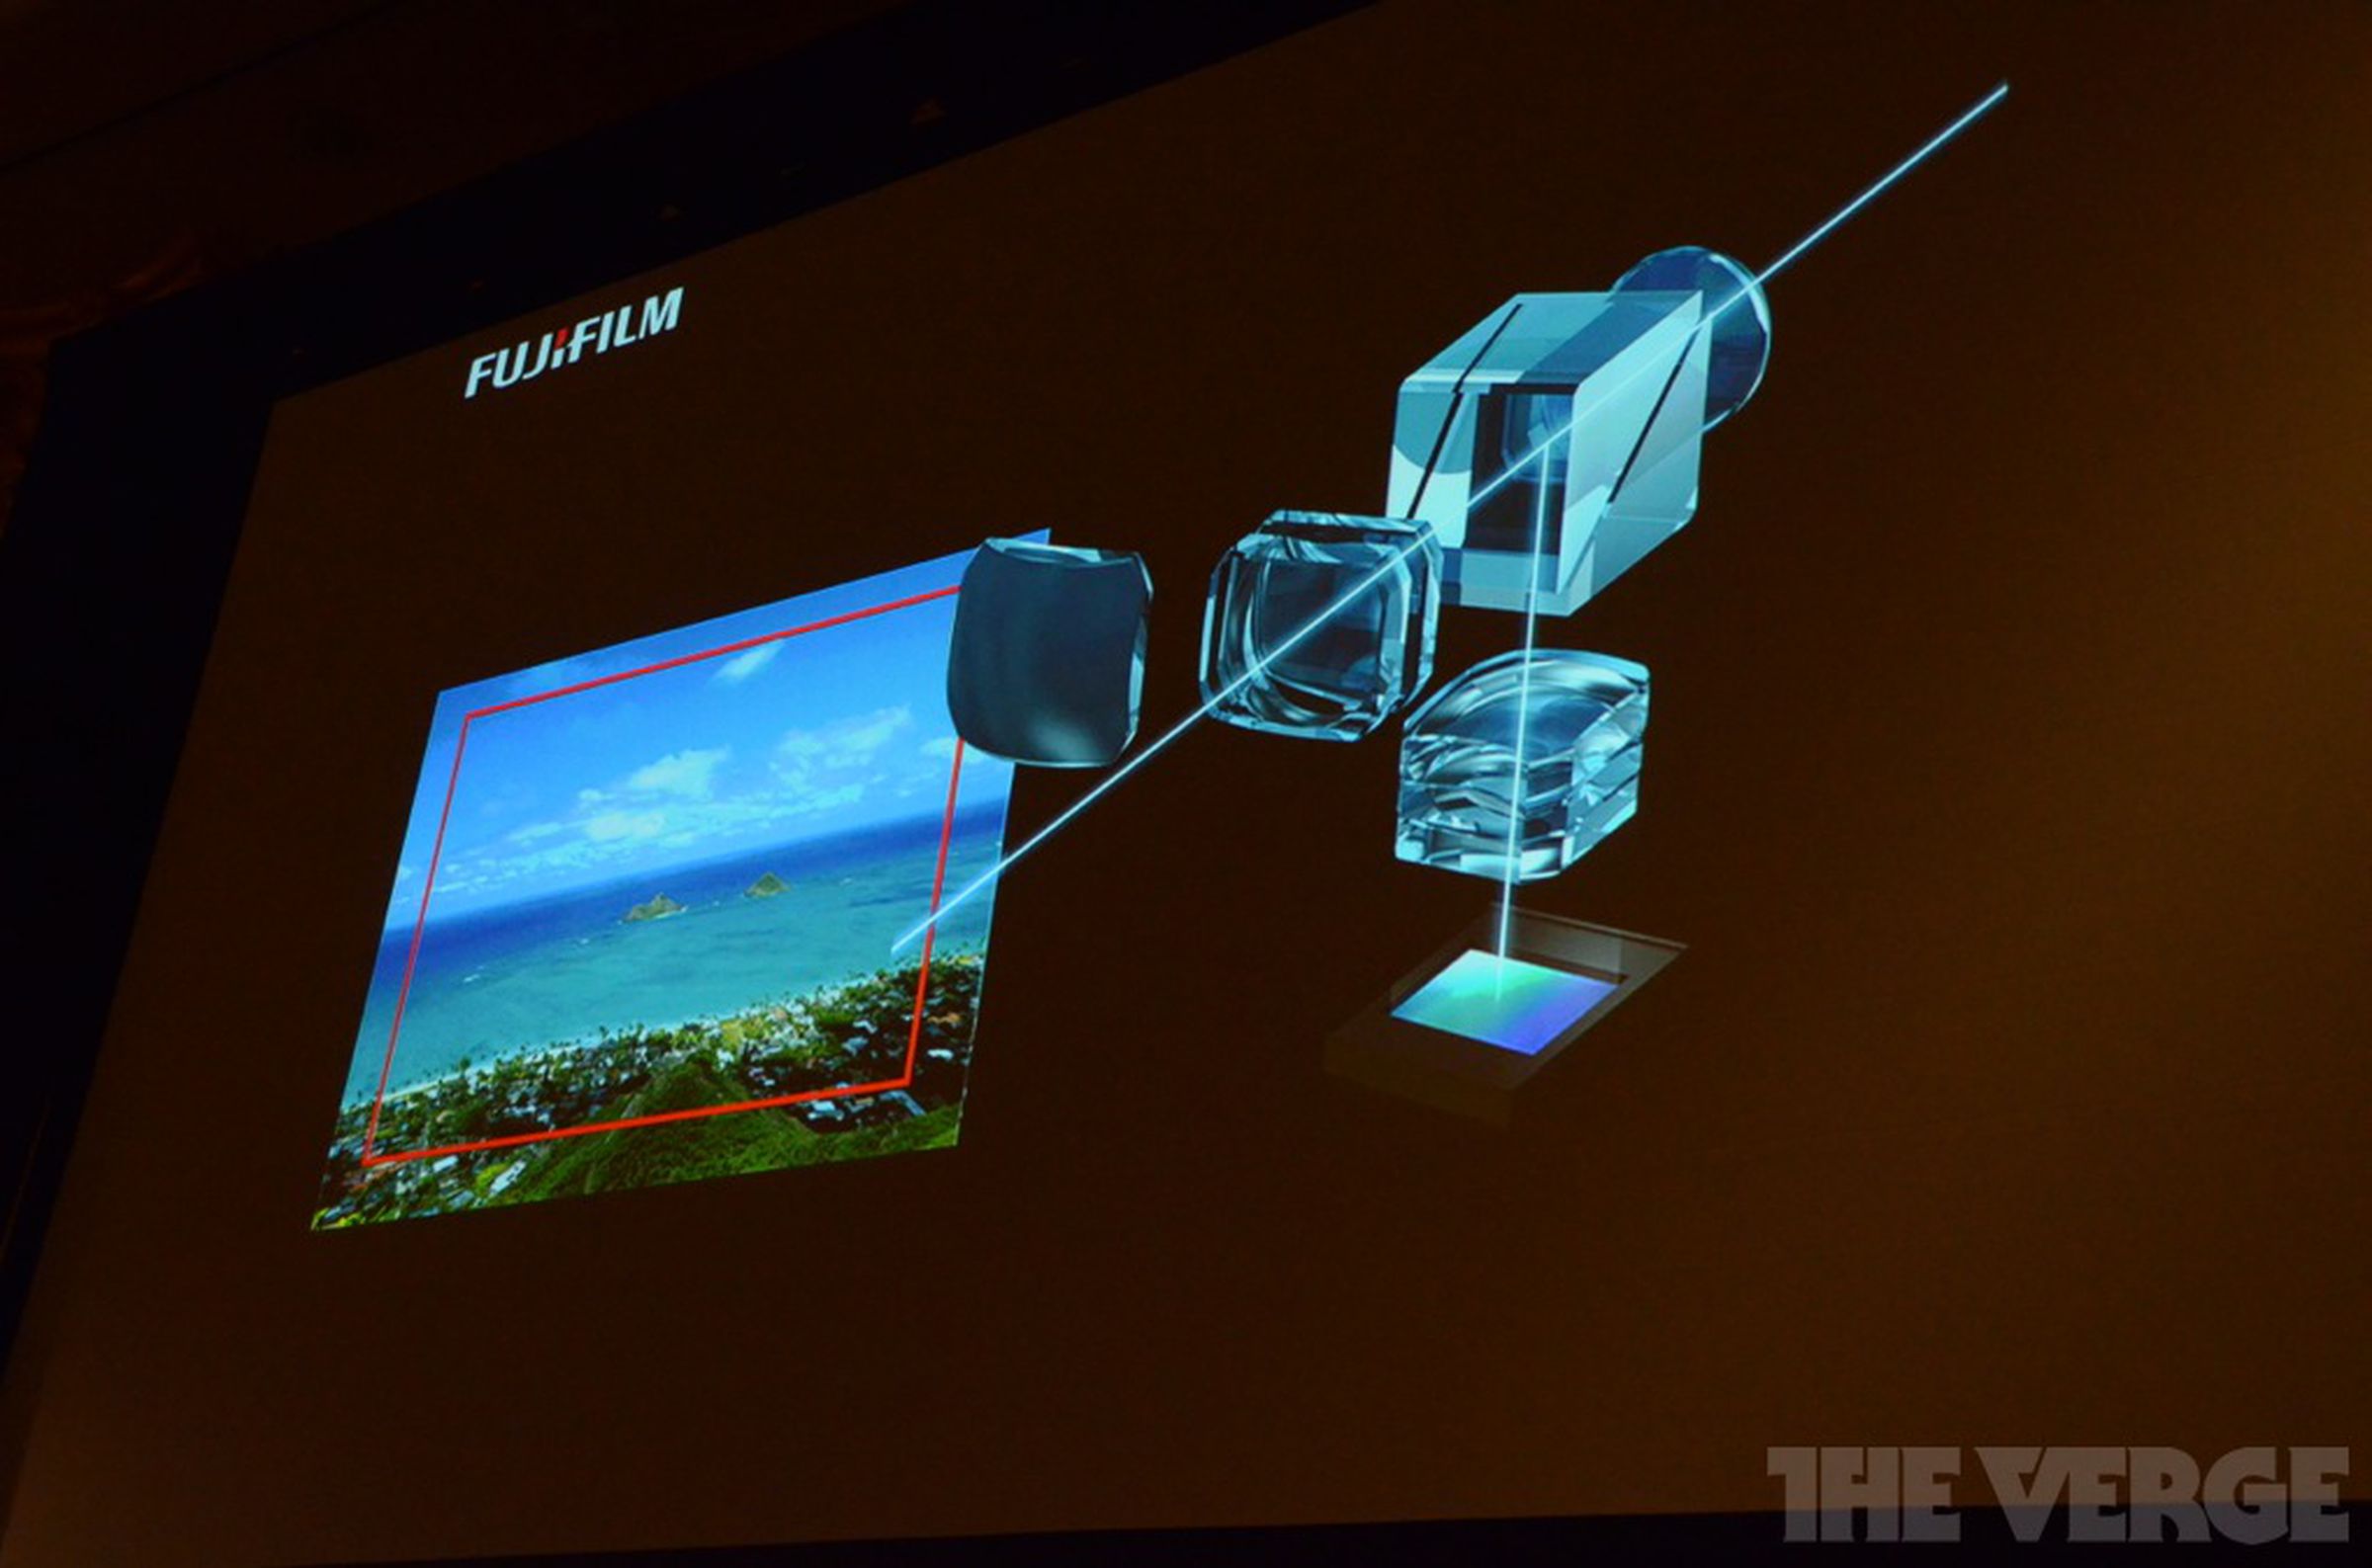 Fujifilm X-Pro1 announcement pictures